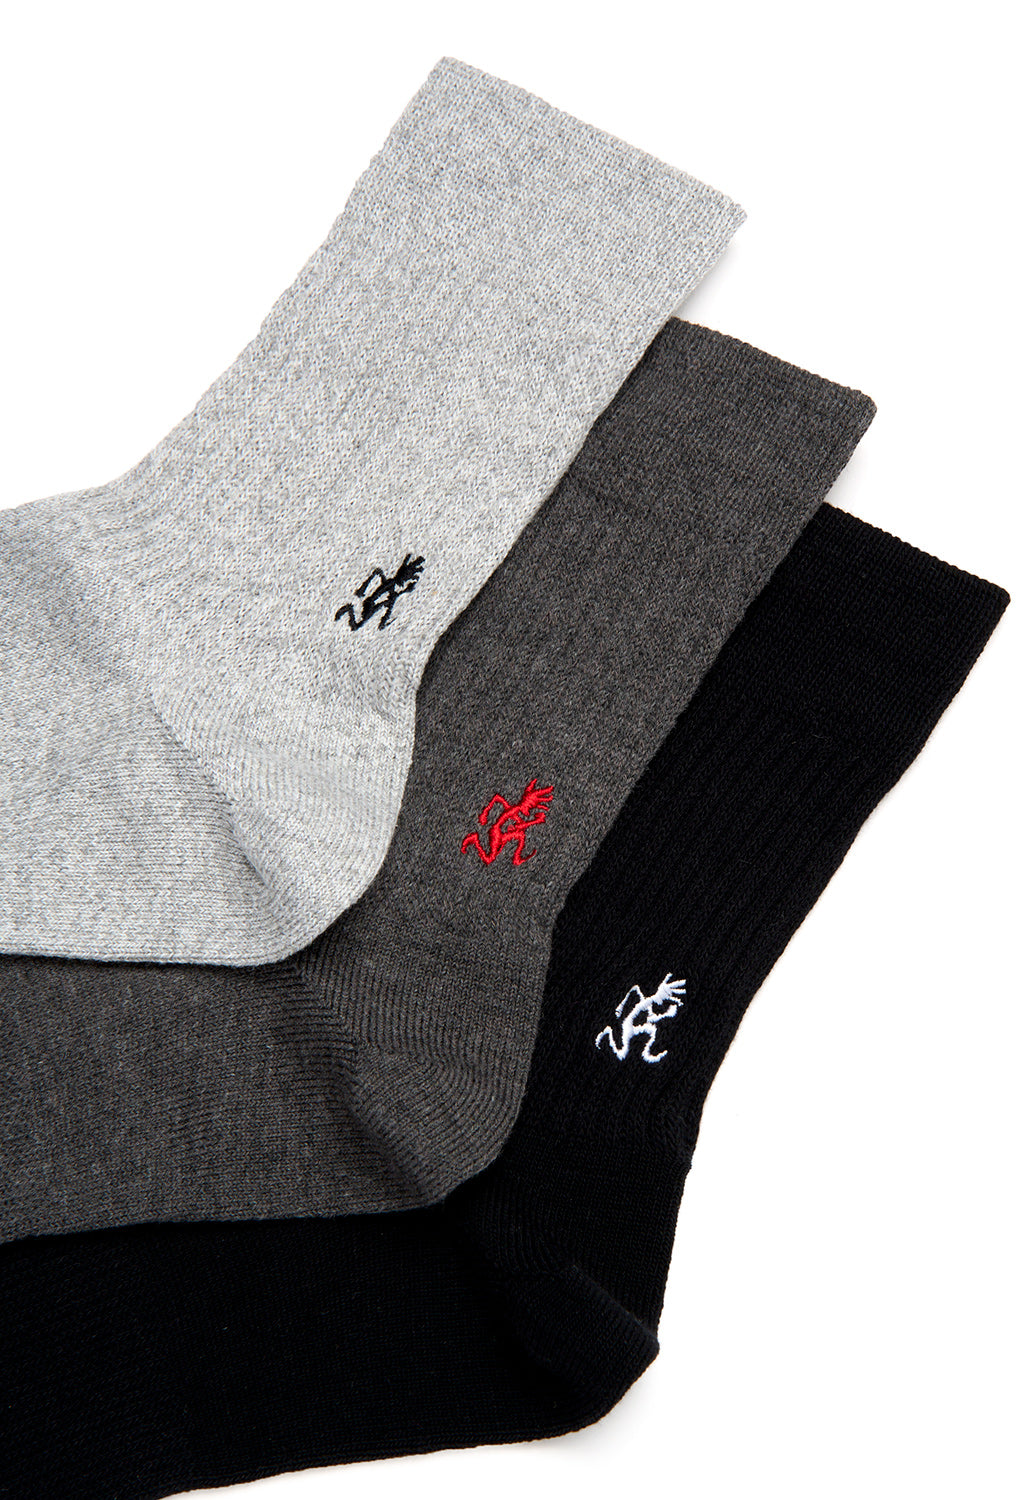 Gramicci Men's Basic Crew Socks - Black